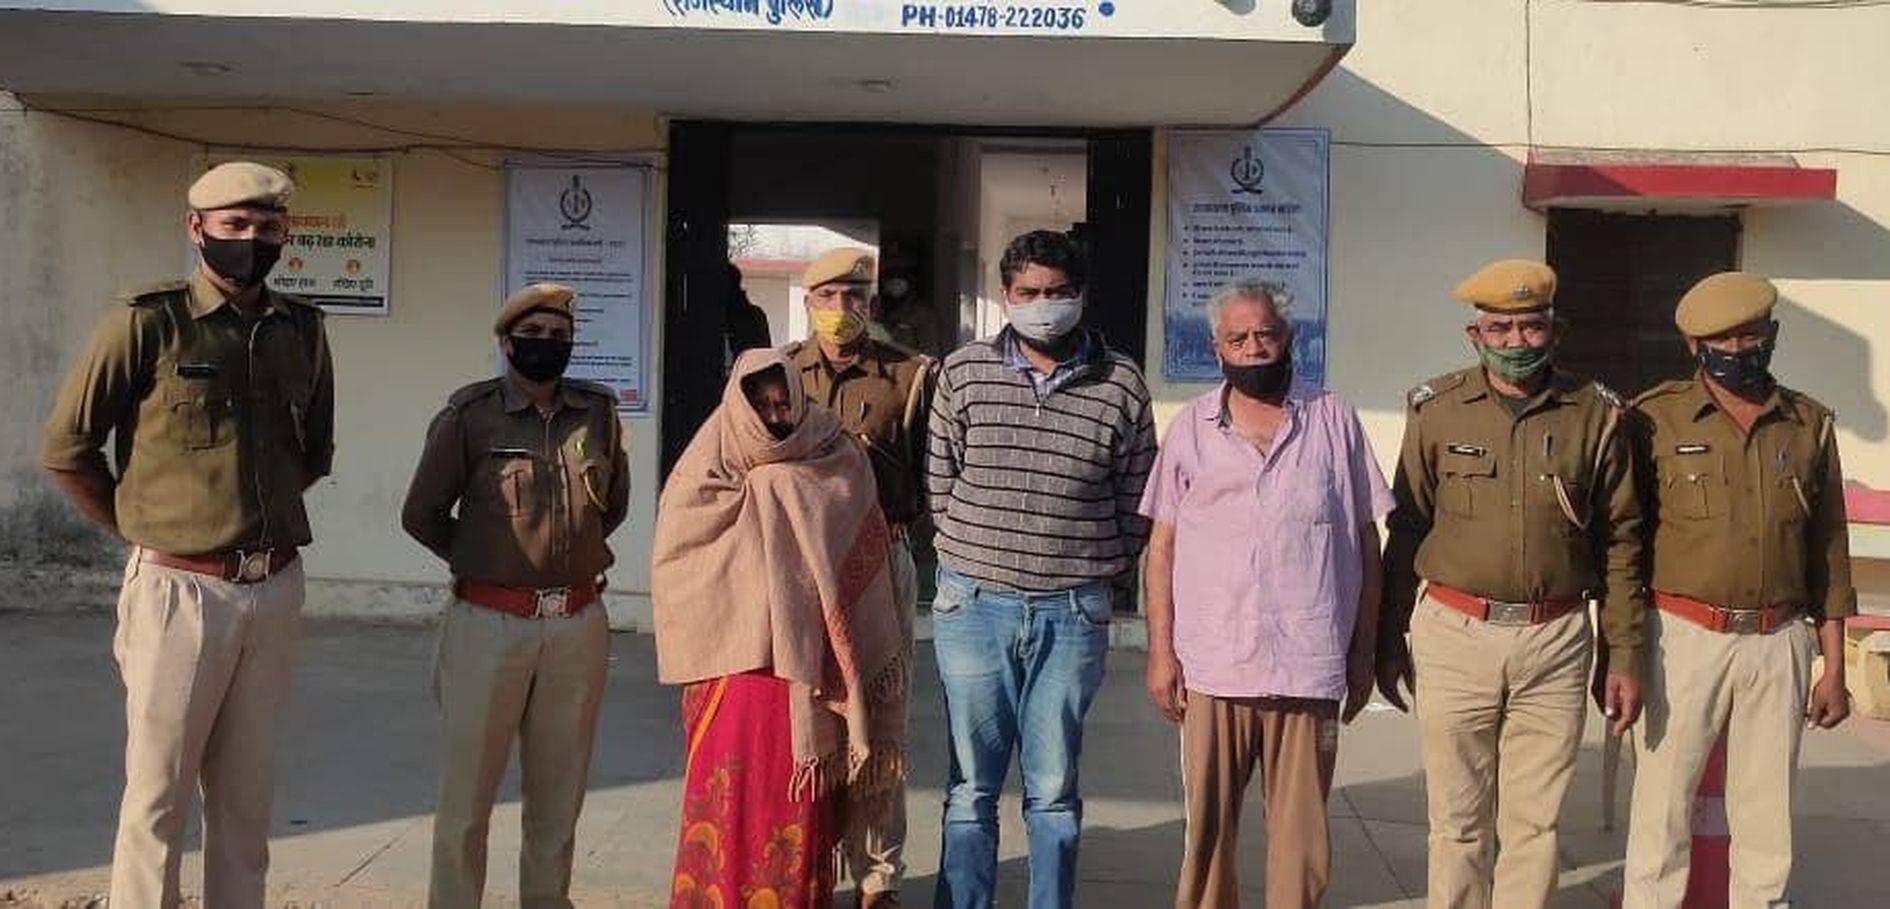 fraud aaropee arrested: 11 लाख रुपए की दाल की धोखाधड़ी के मामले में जयपुर के व्यवसायी दंपती व पुत्र गिरफ्तार